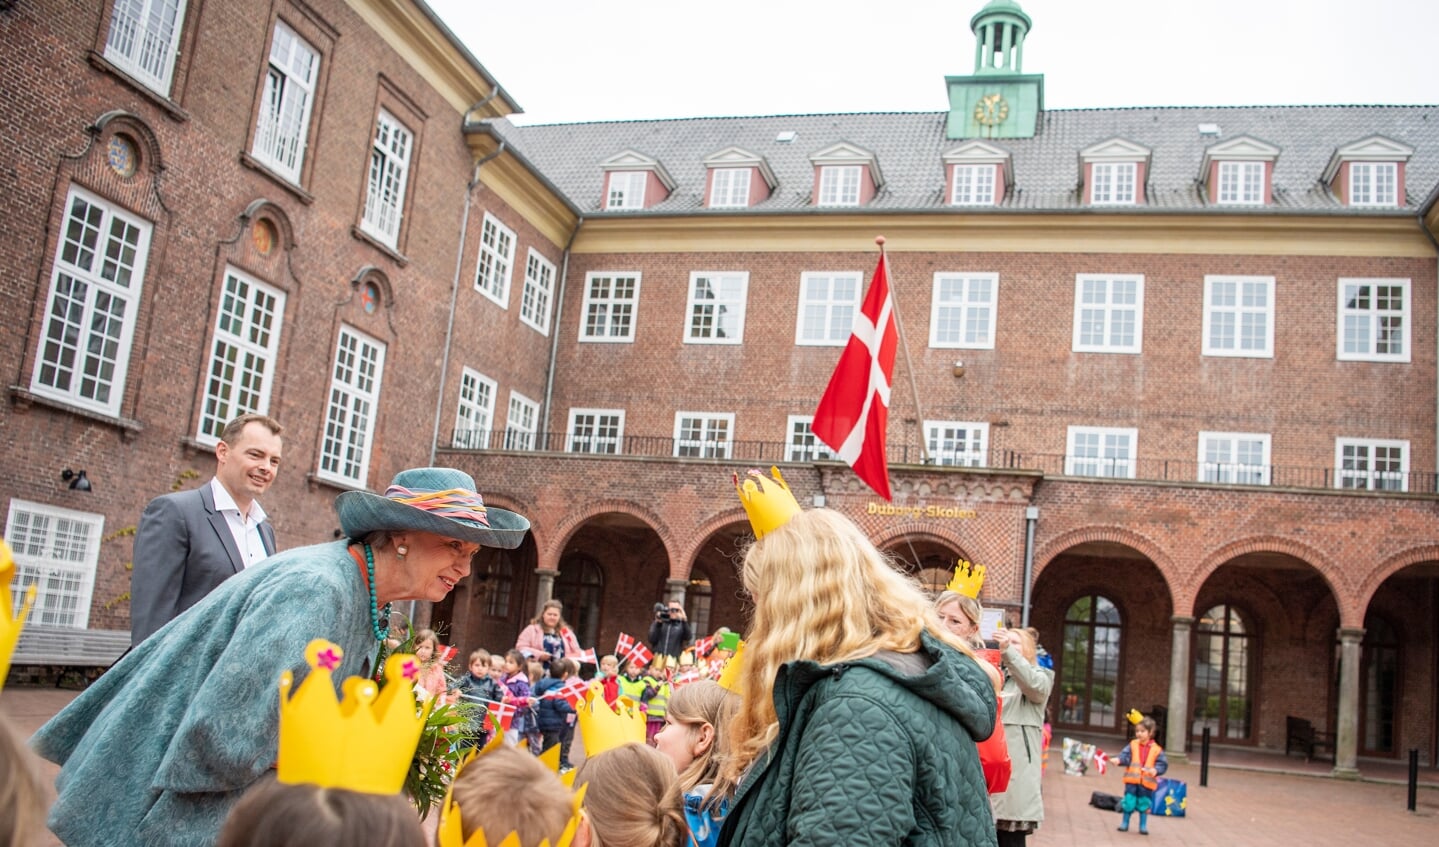 Prinsesse Benedikte blev modtaget af flere børnehavebørn, der havde klædt sig ud med hjemmelavede kroner. Foto: